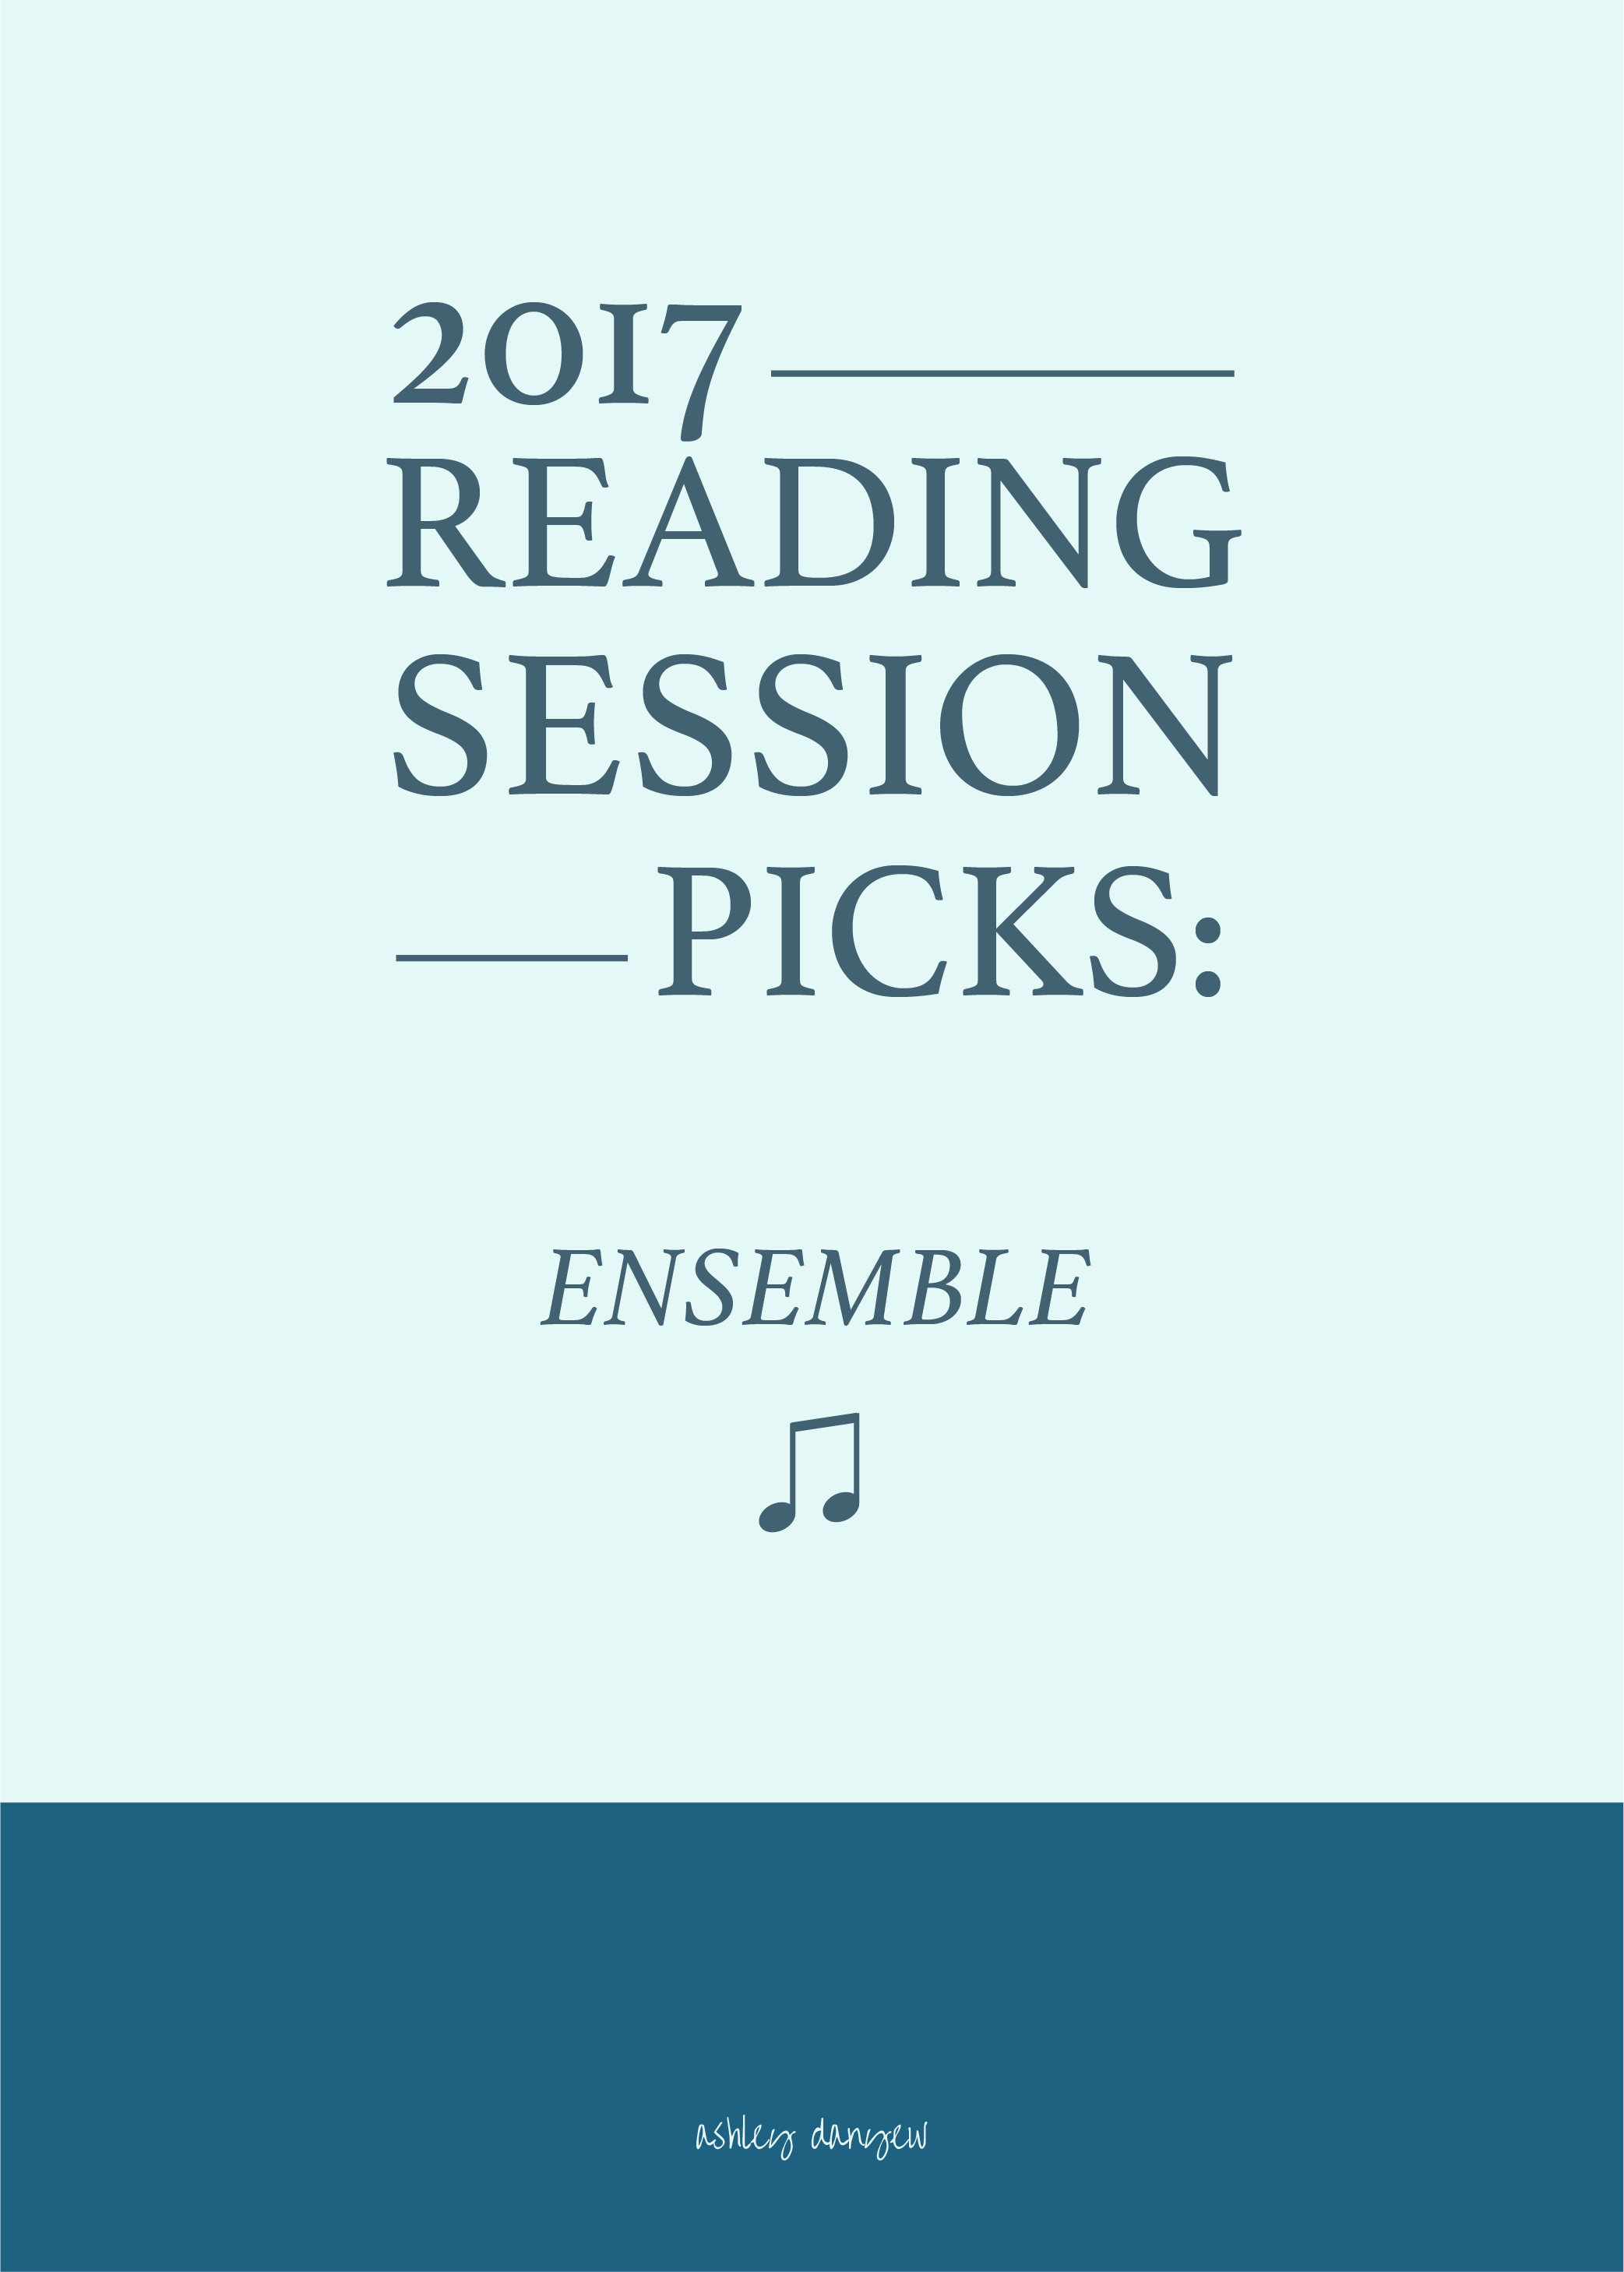 2017 Reading Session Picks - Ensemble-02.png